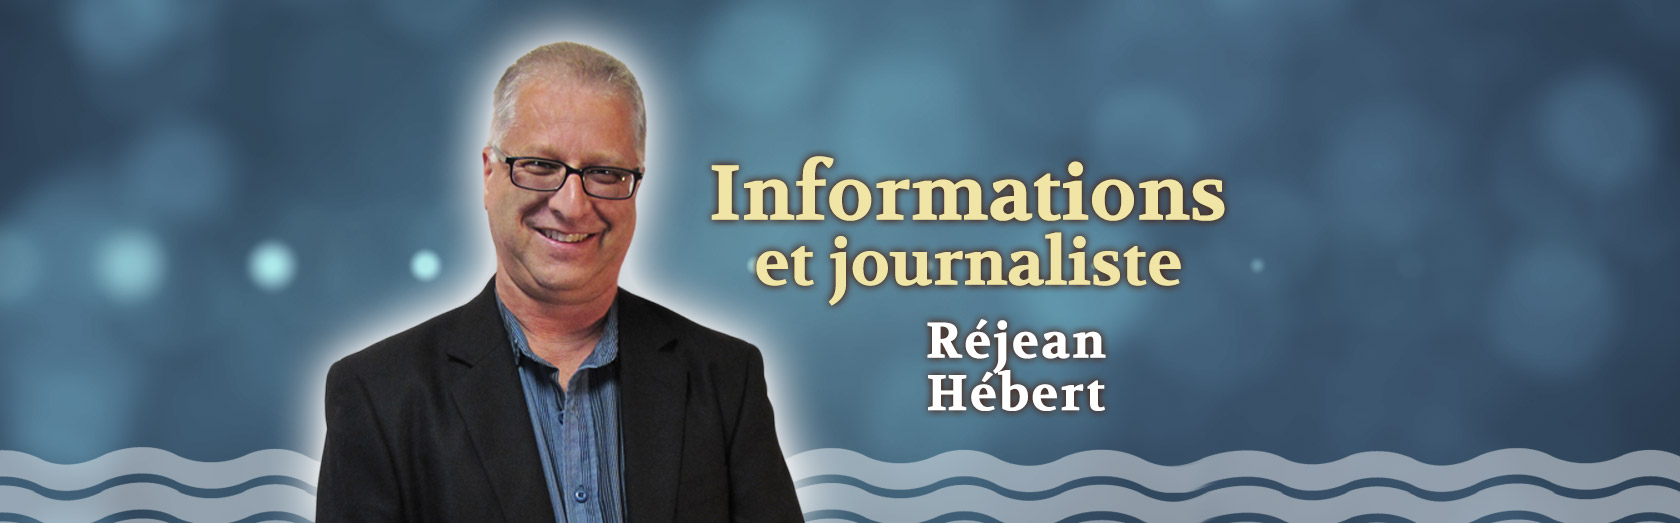 Informations et journaliste Réjean Hébert